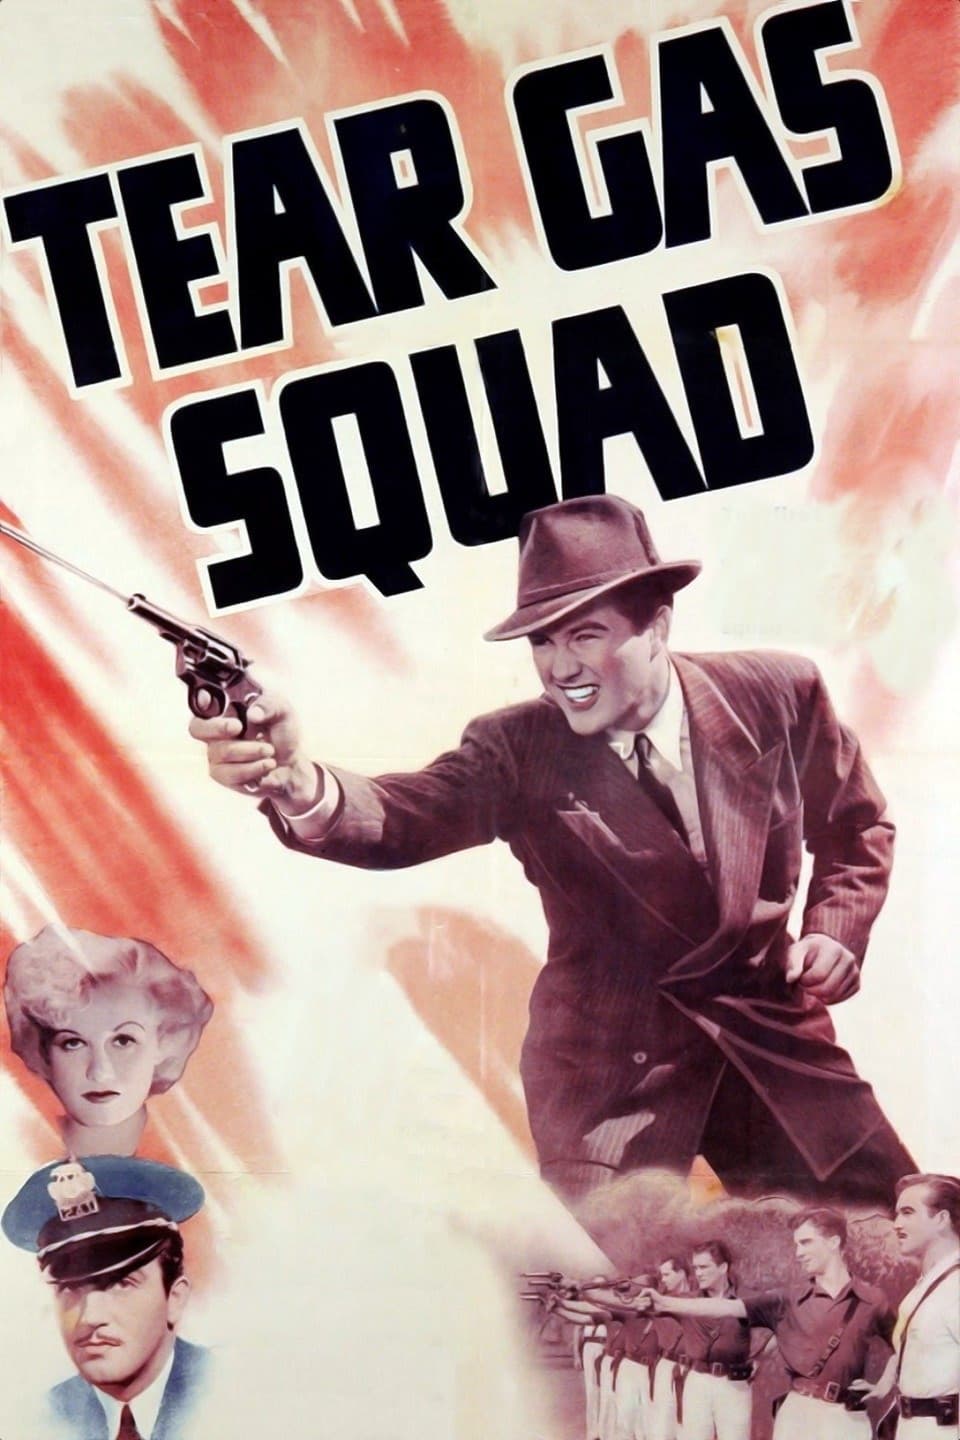 Tear Gas Squad (1940)